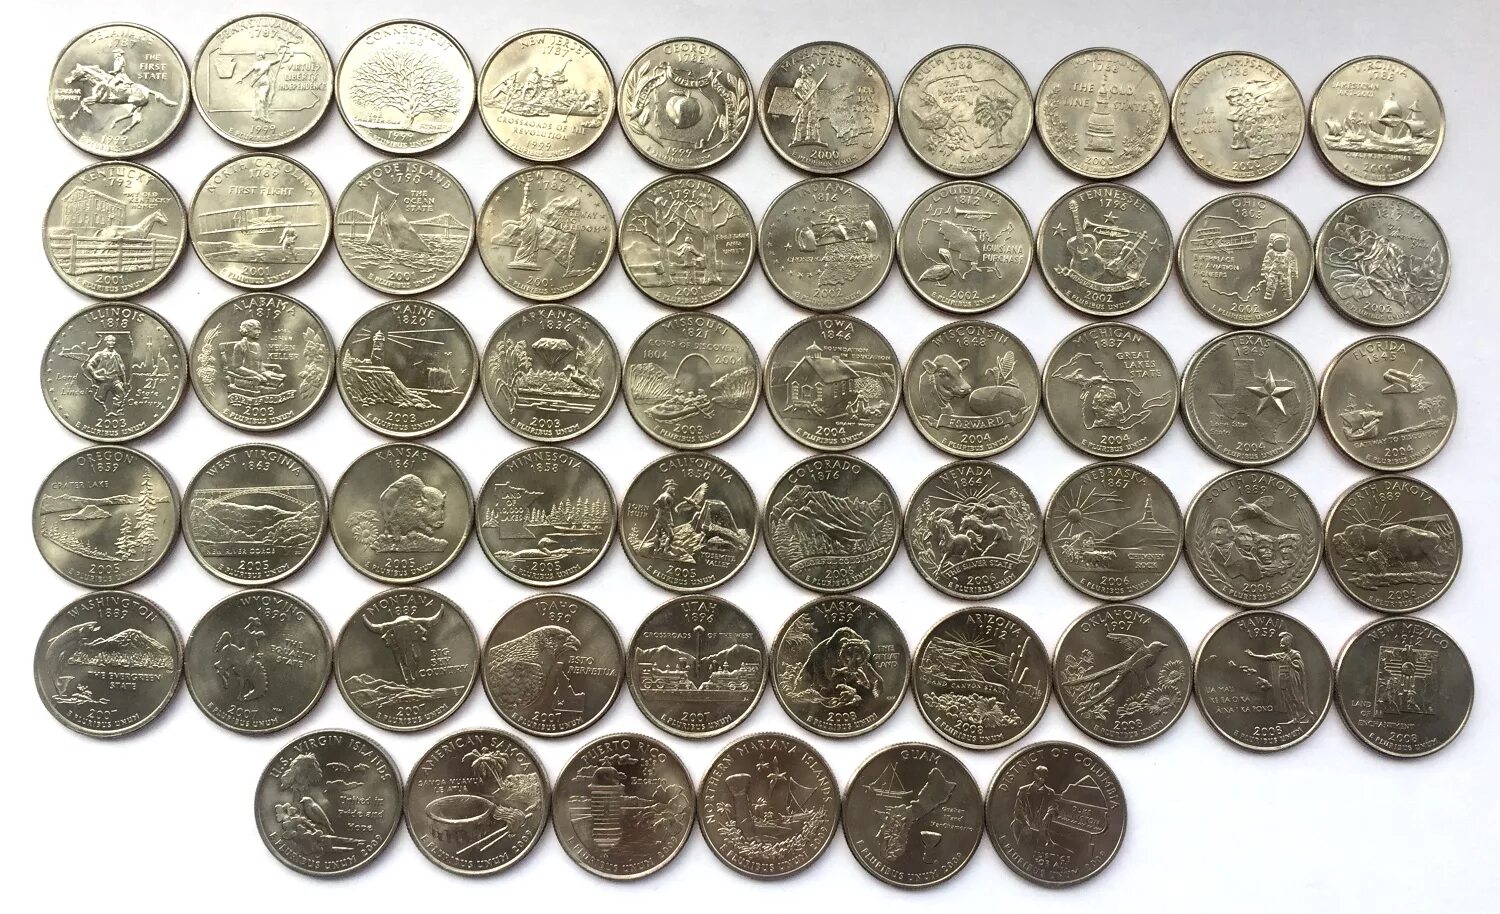 Рубль коллекции. Полный набор квотеров (25 центов) США "штаты и территории" 1999-2009, 56 монет. Монеты США 25 центов штаты. Коллекция 25 центов США. 25 Центов США штаты и территории 1999 год.